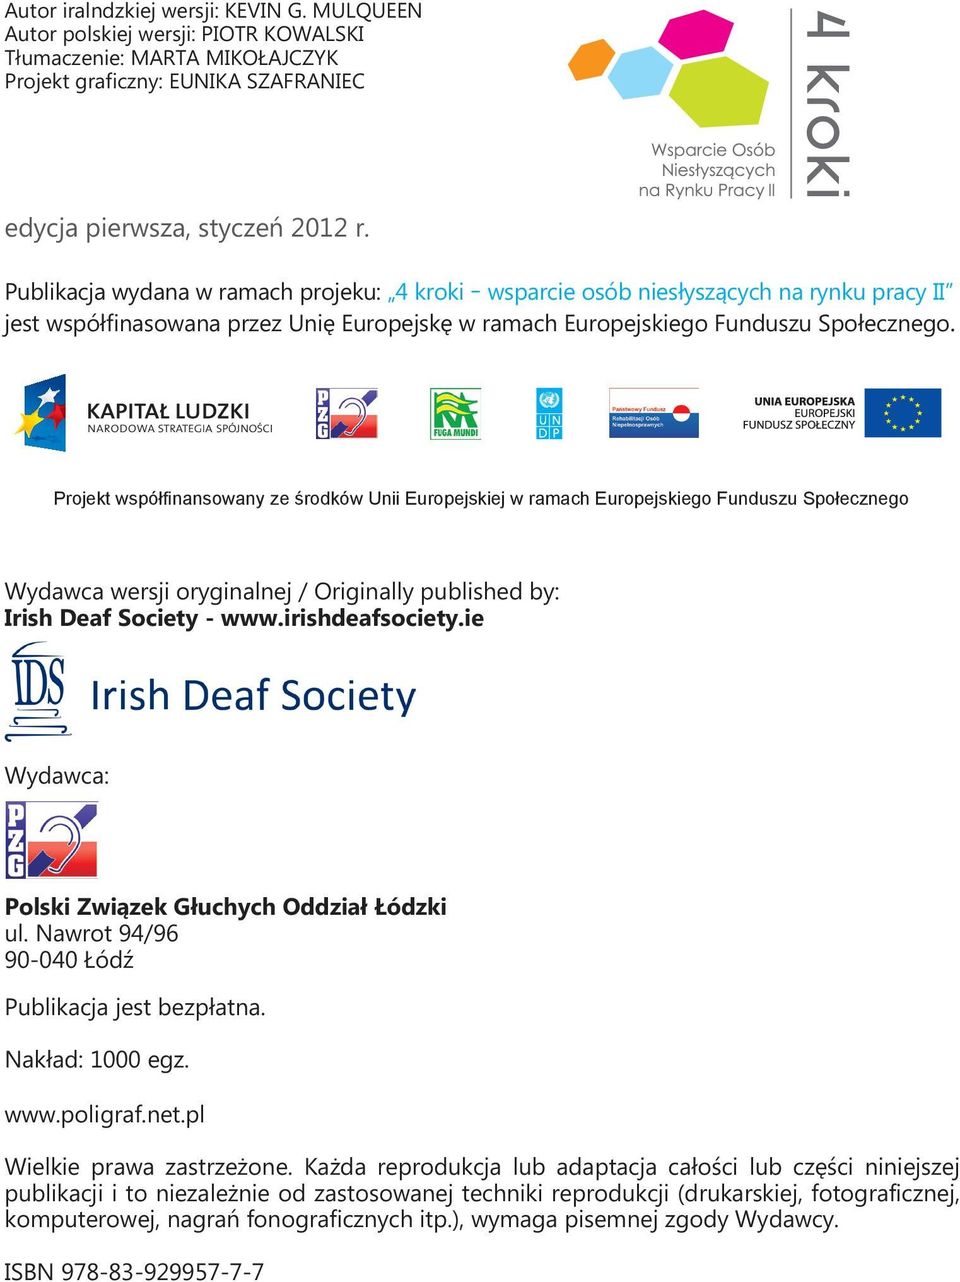 Projekt współfinansowany ze środków Unii Europejskiej w ramach Europejskiego Funduszu Społecznego Wydawca wersji oryginalnej / Originally published by: Irish Deaf Society - www.irishdeafsociety.